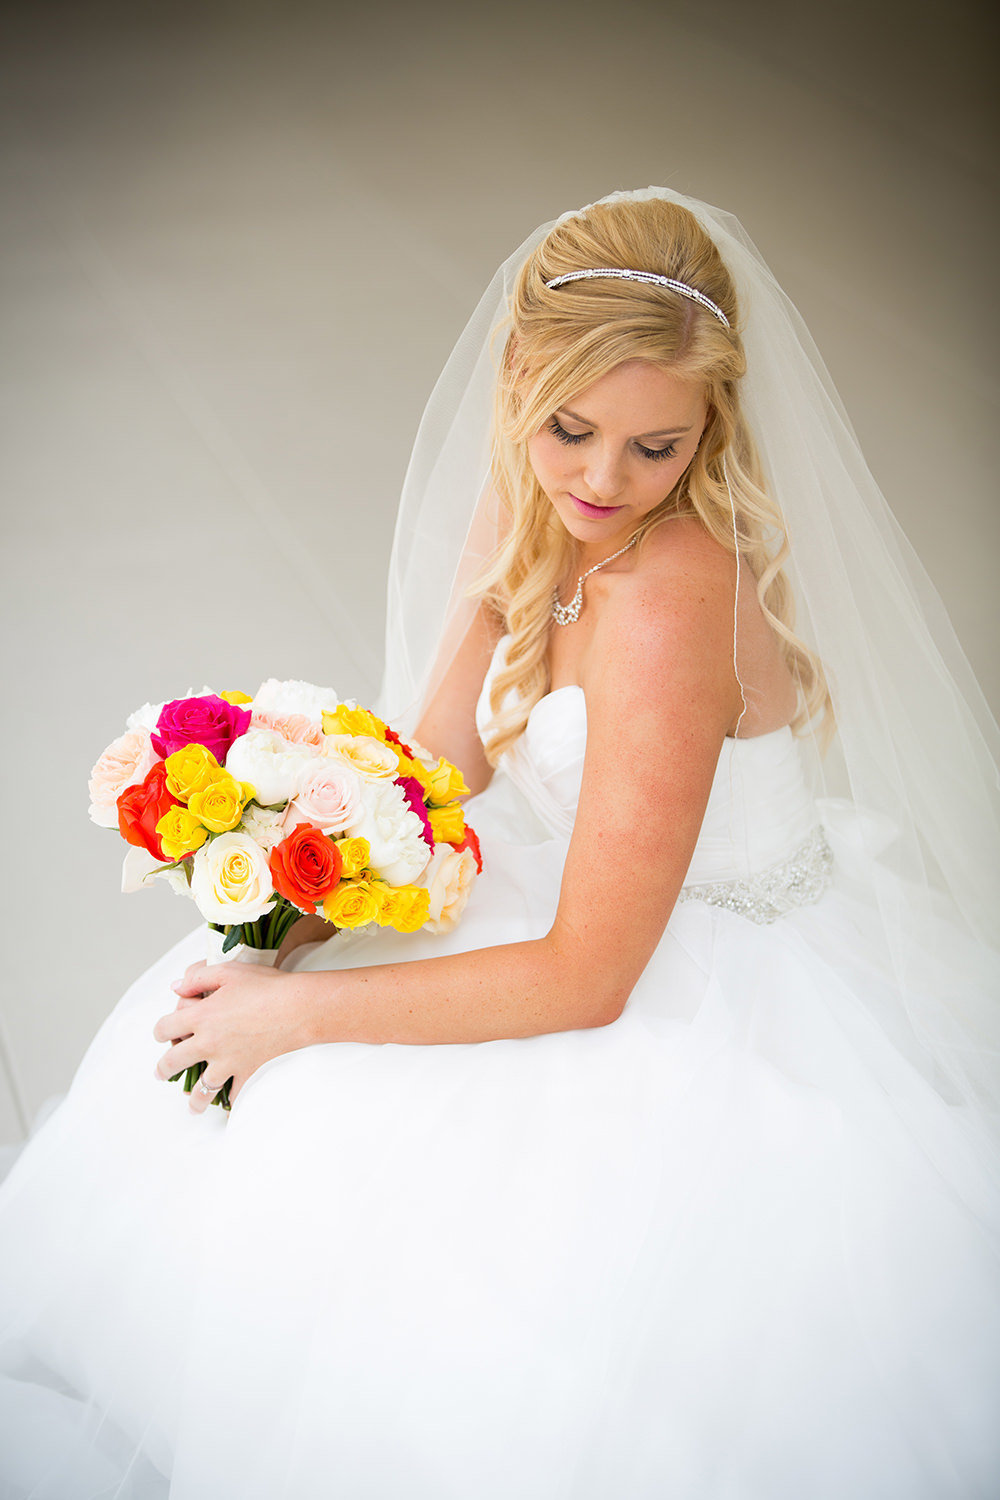 Bridal portrait with colorful bouquet